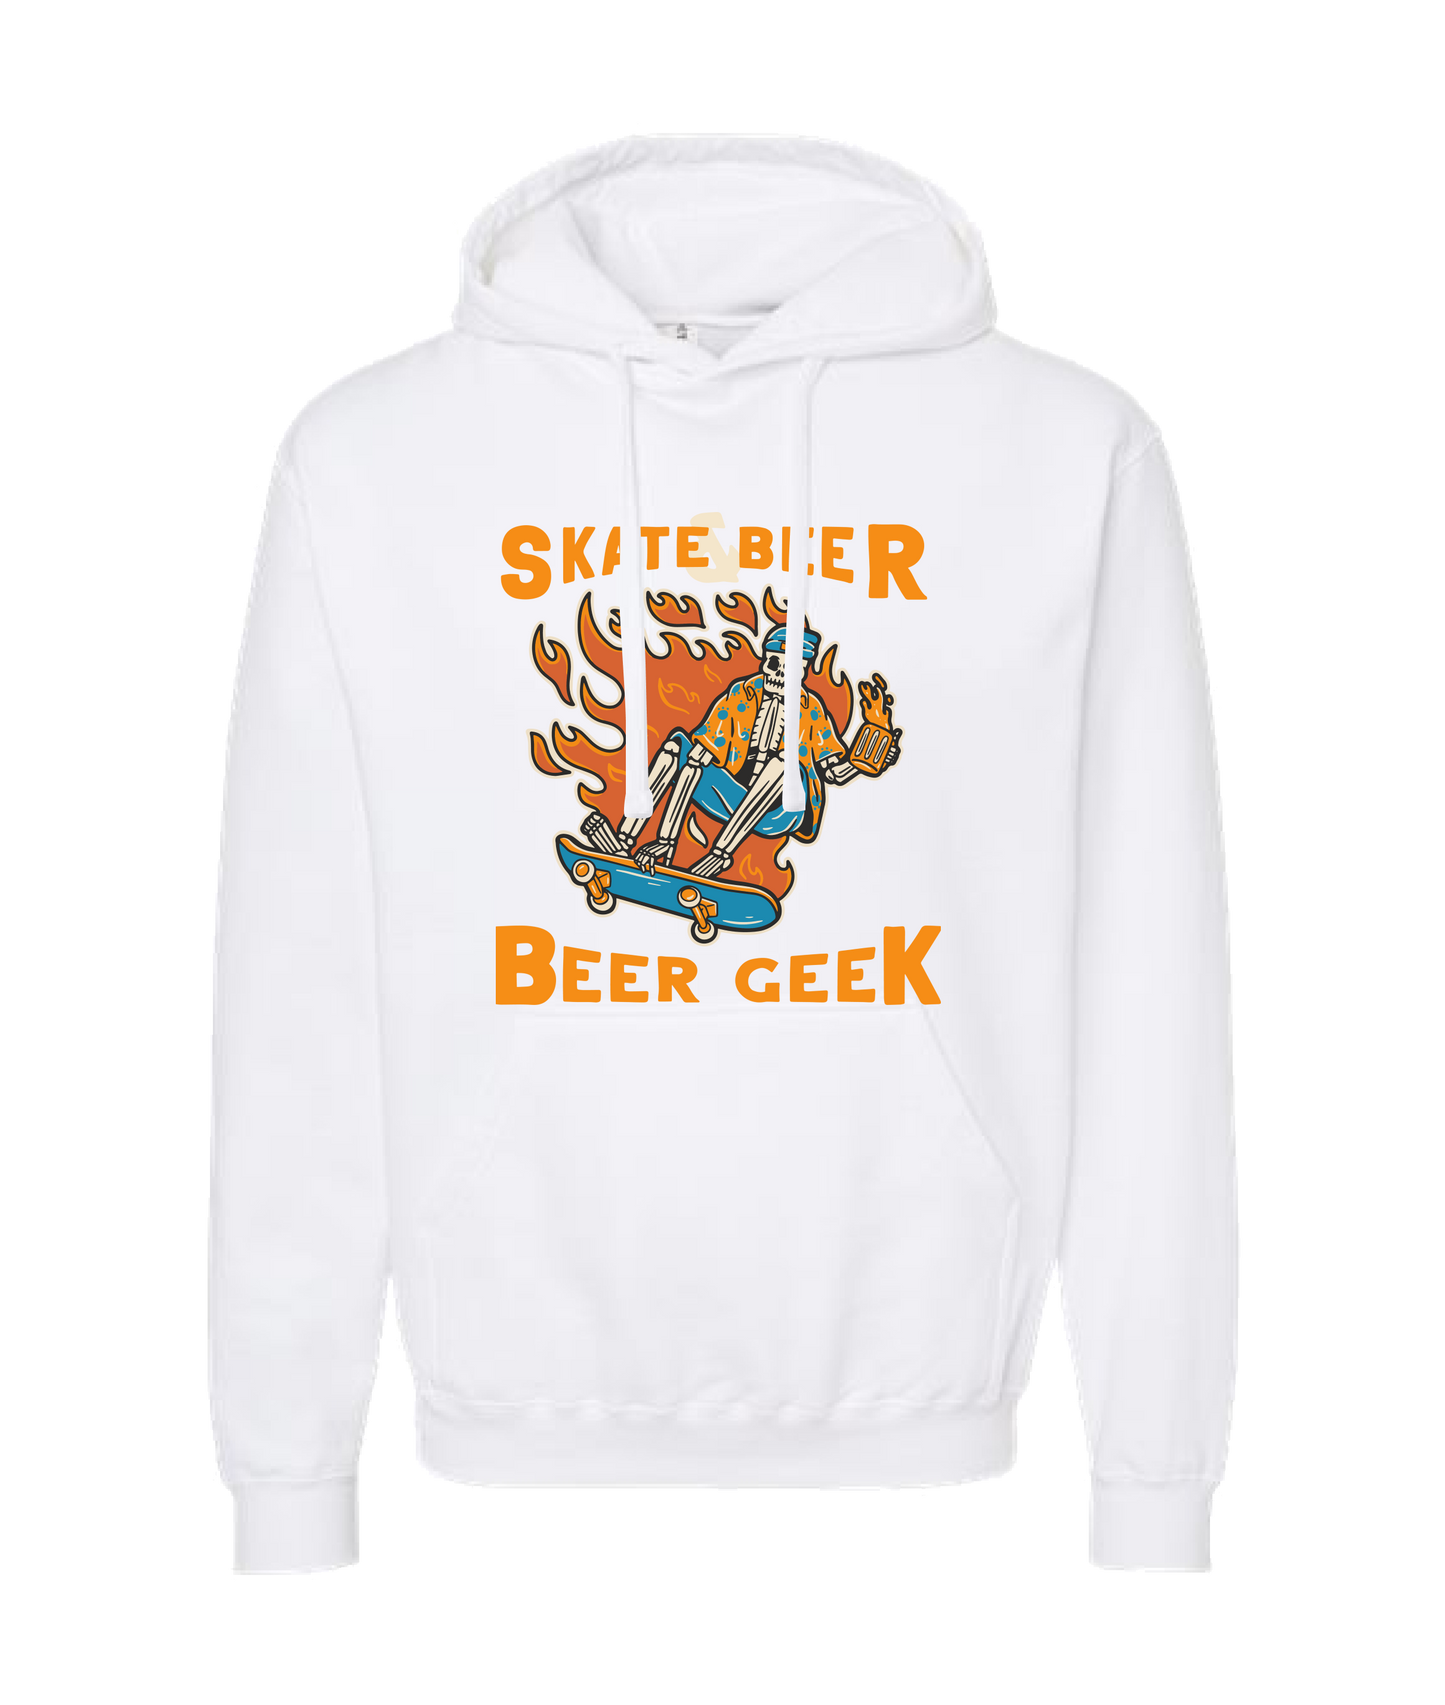 Beer Geek - Skate Beer Logo - White Hoodie